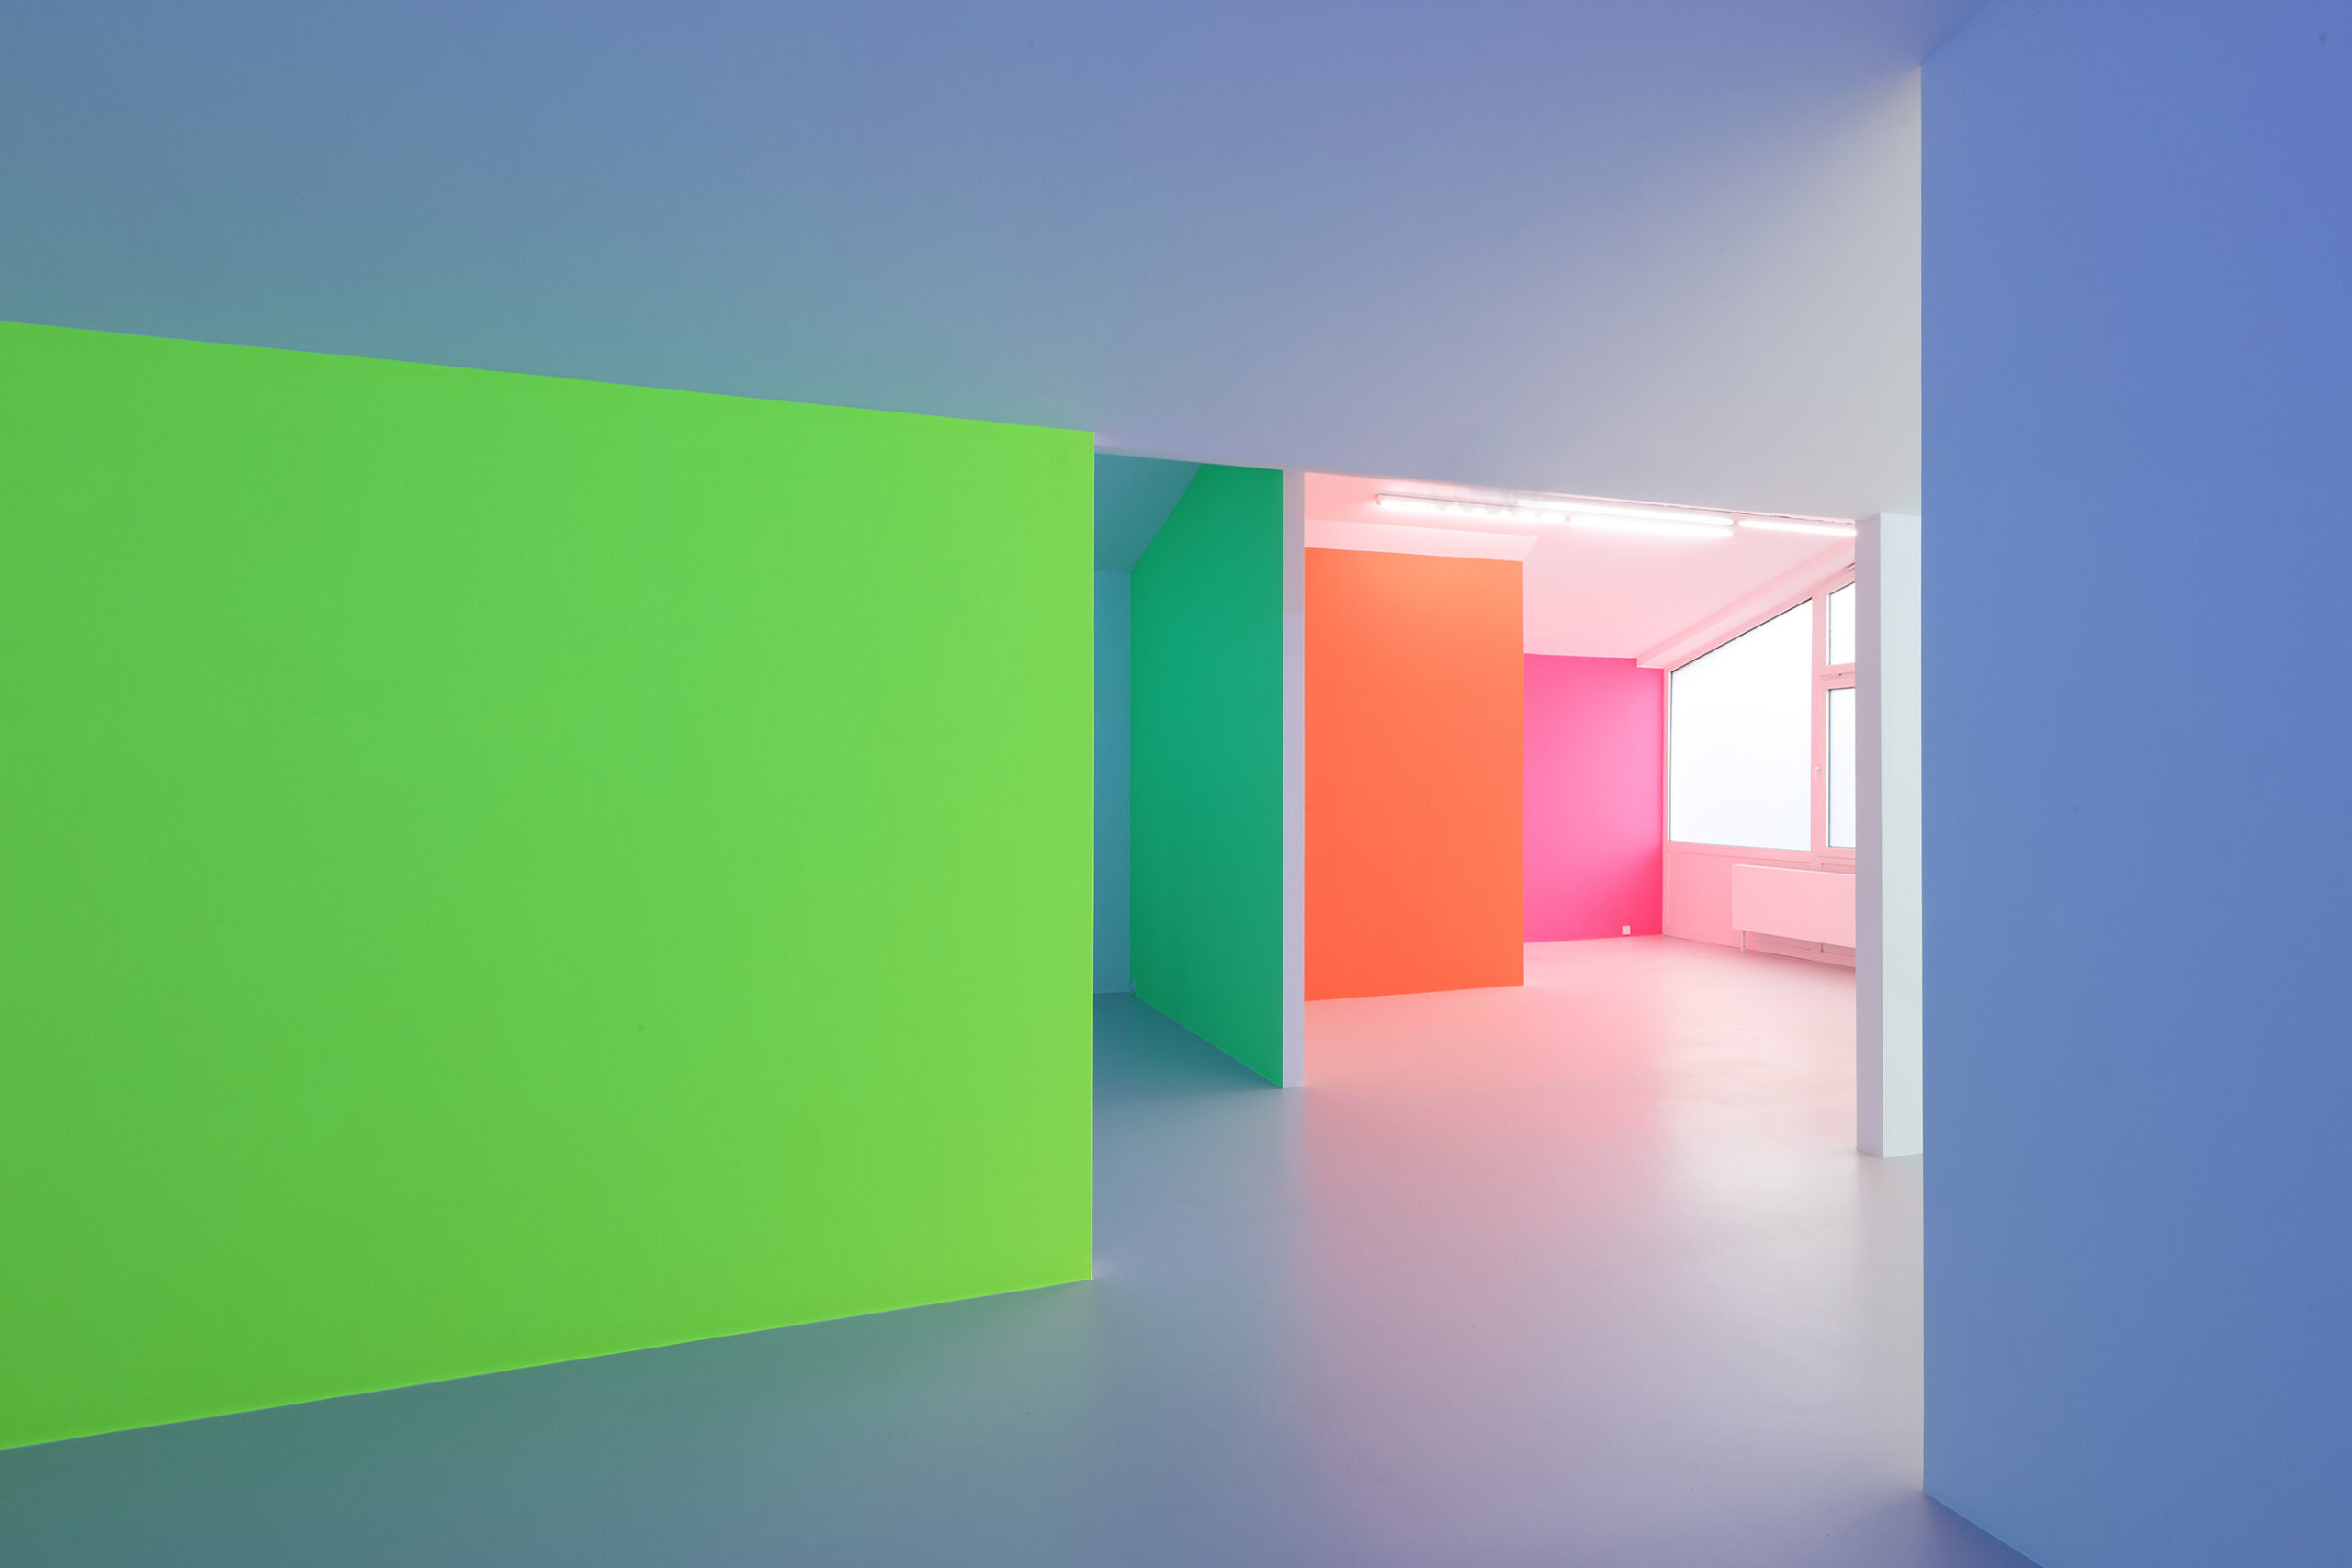 Zora Kreuzer, Shift, 2022
Acrylfarbe auf Wand, farbige Leuchtstoffröhren
Museum gegenstandsfreier Kunst Otterndorf
Foto: Alistair Overbruck